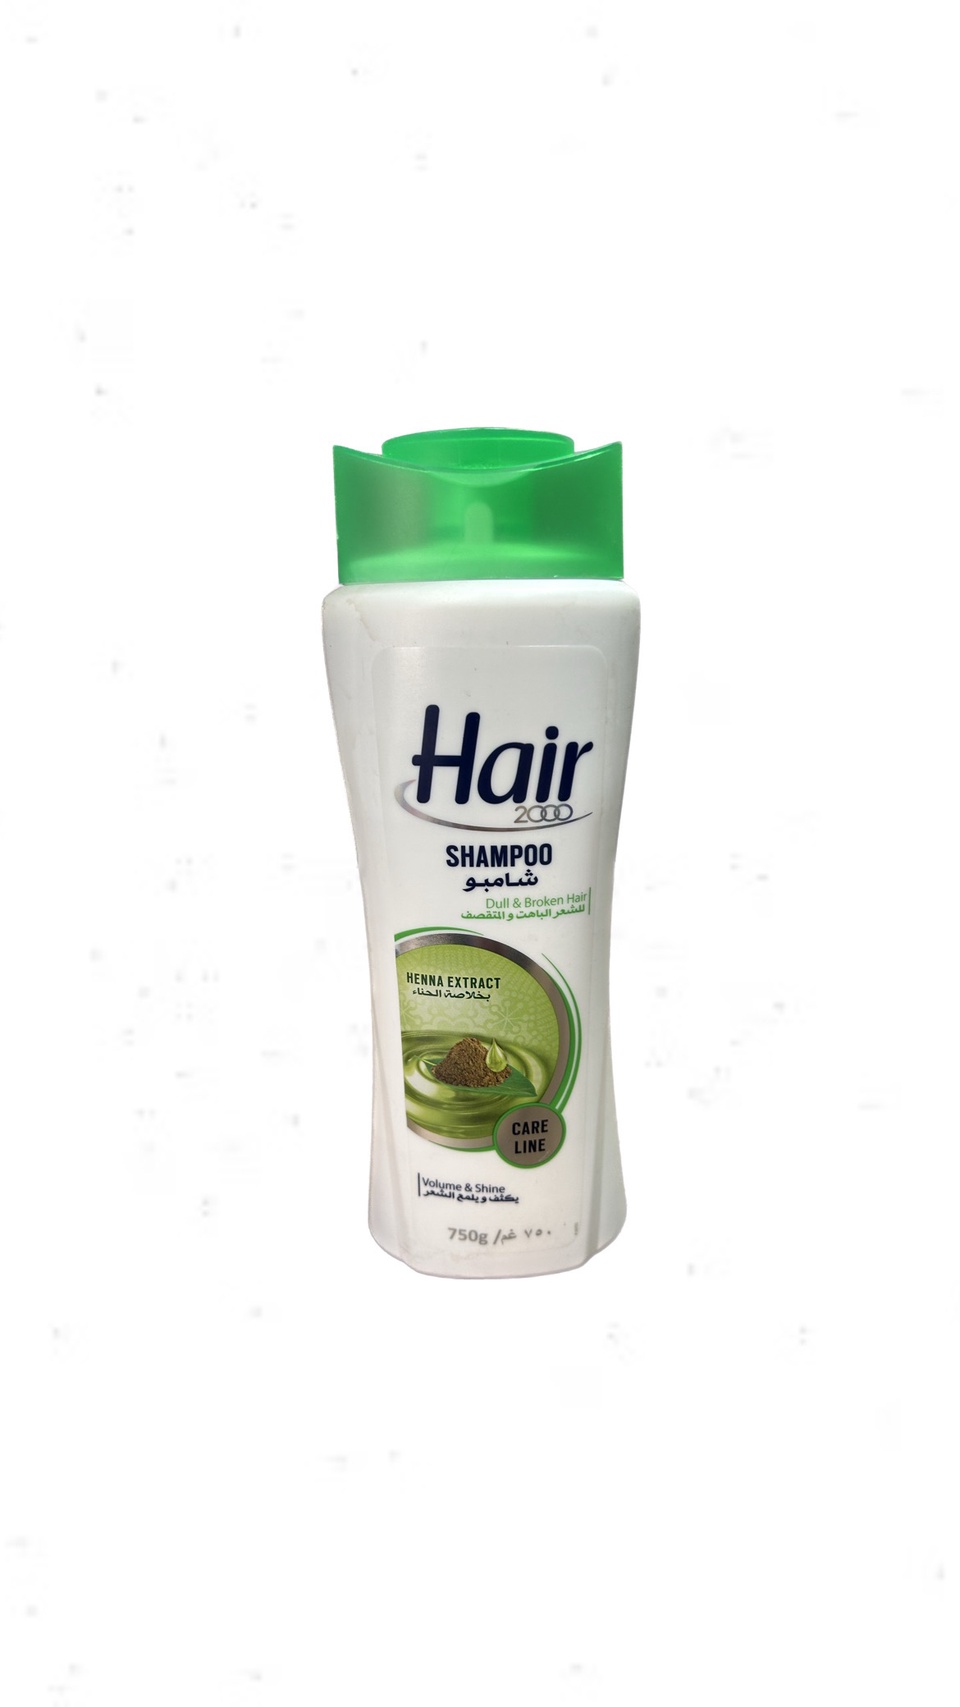 Шампунь для волос HAIR 750мл с экстрактом хны - 300 ₽, заказать онлайн.